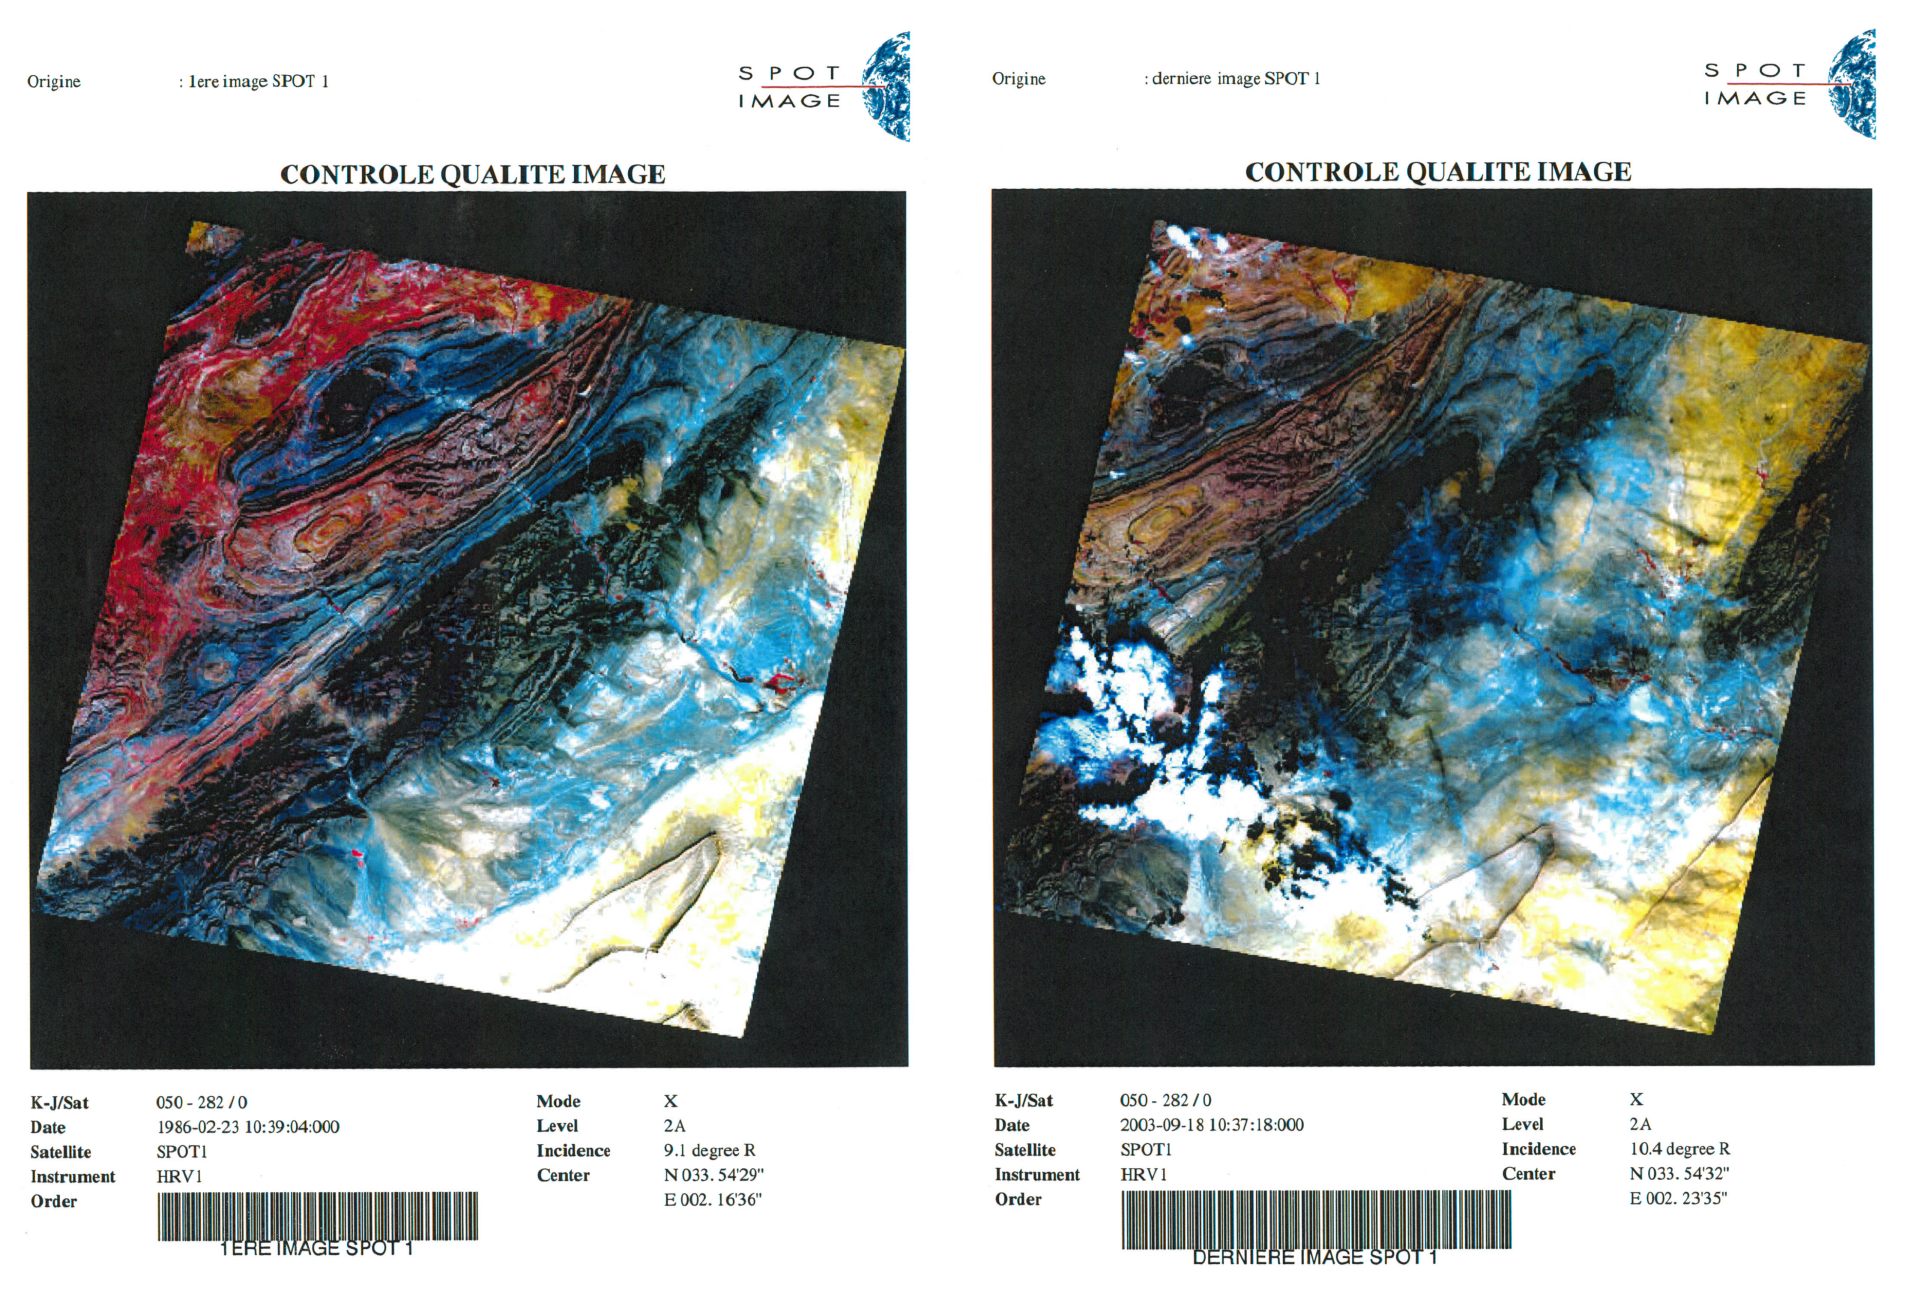 30 ans du satellite SPOT - Anniversaire - Première et dernière images - Djebel amour - Février 1986 - Septembre 2003 - CNES - Spot Image